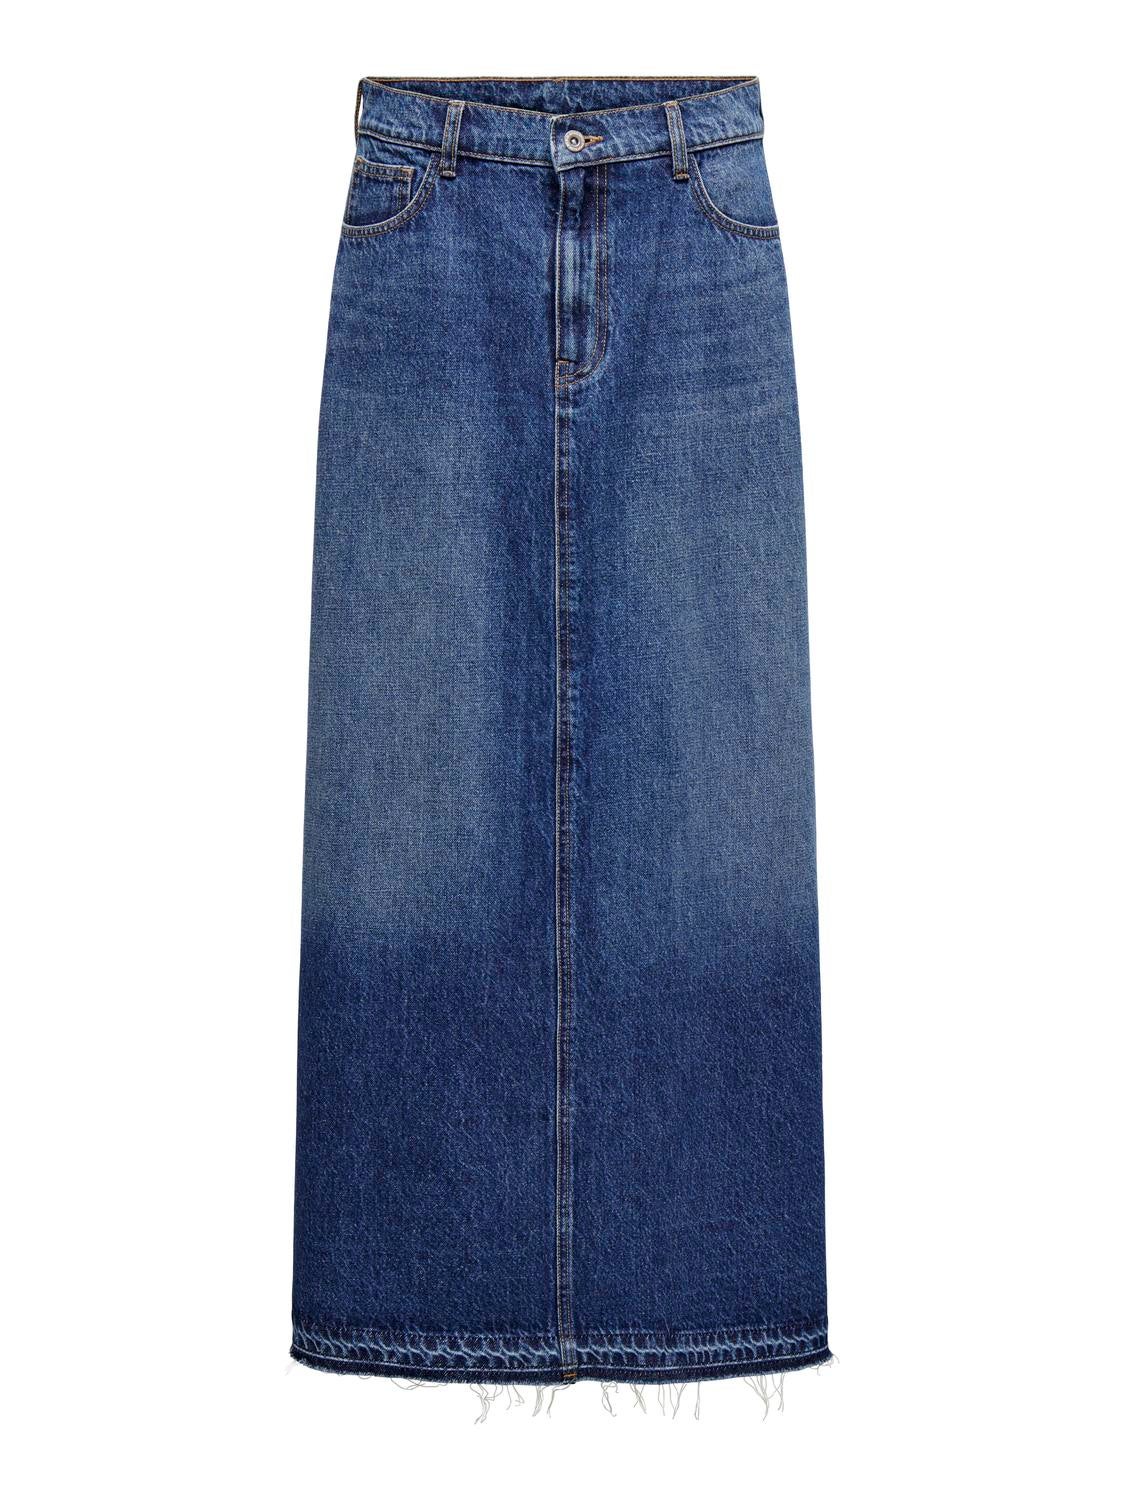 ONLY ONLLINETTE LONG SKIRT - Maxi skirt - dark blue denim/dark